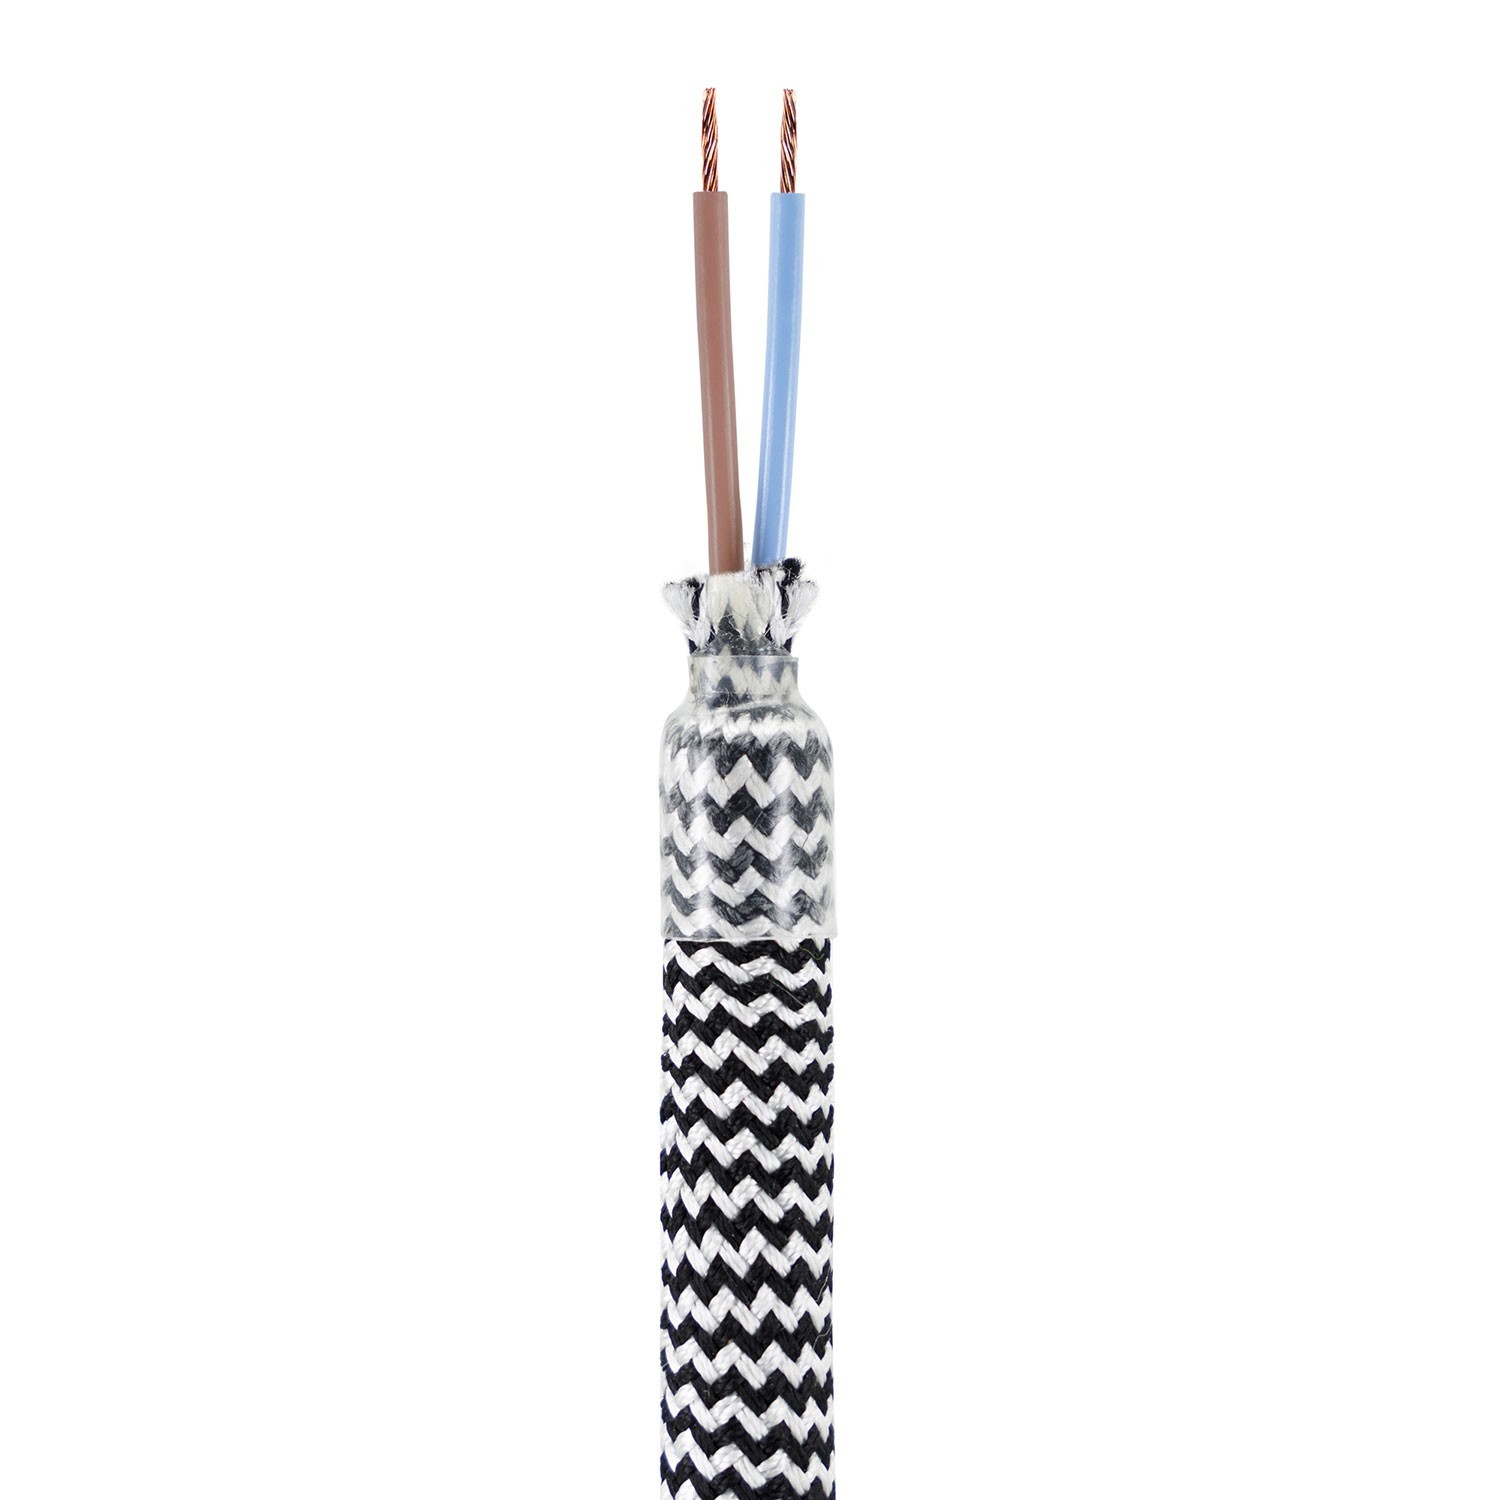 Creative Flex set fleksibilna cijev presvučena crno-bijelom RZ04 tkaninom s metalnim stezačima